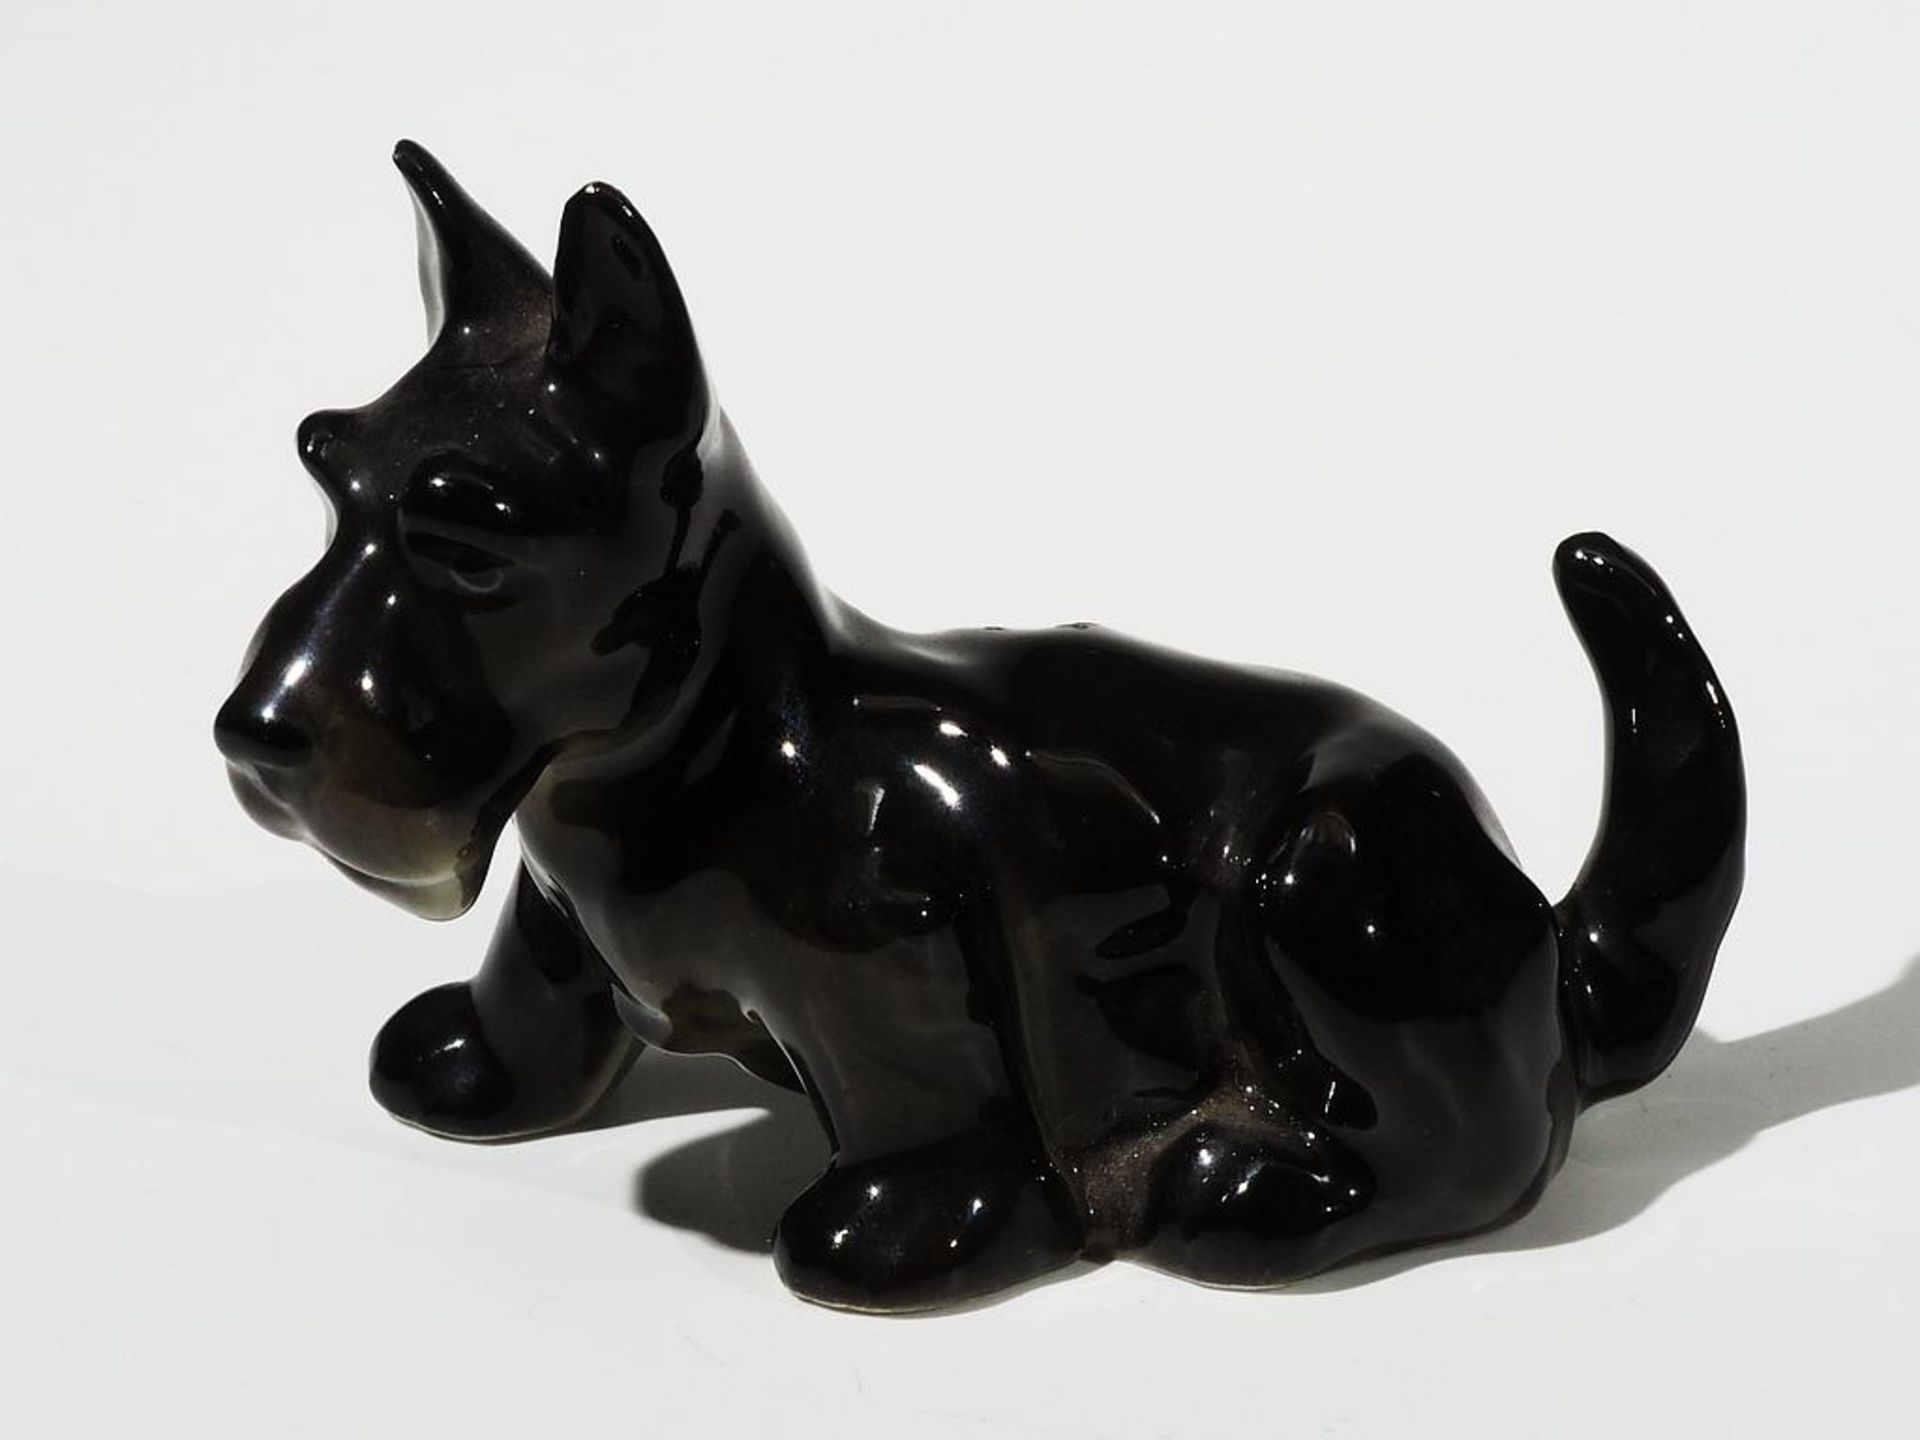 Miniatur sitzender Scotch-Terrier, schwarz. HUTSCHENREUTHER. - Bild 2 aus 6